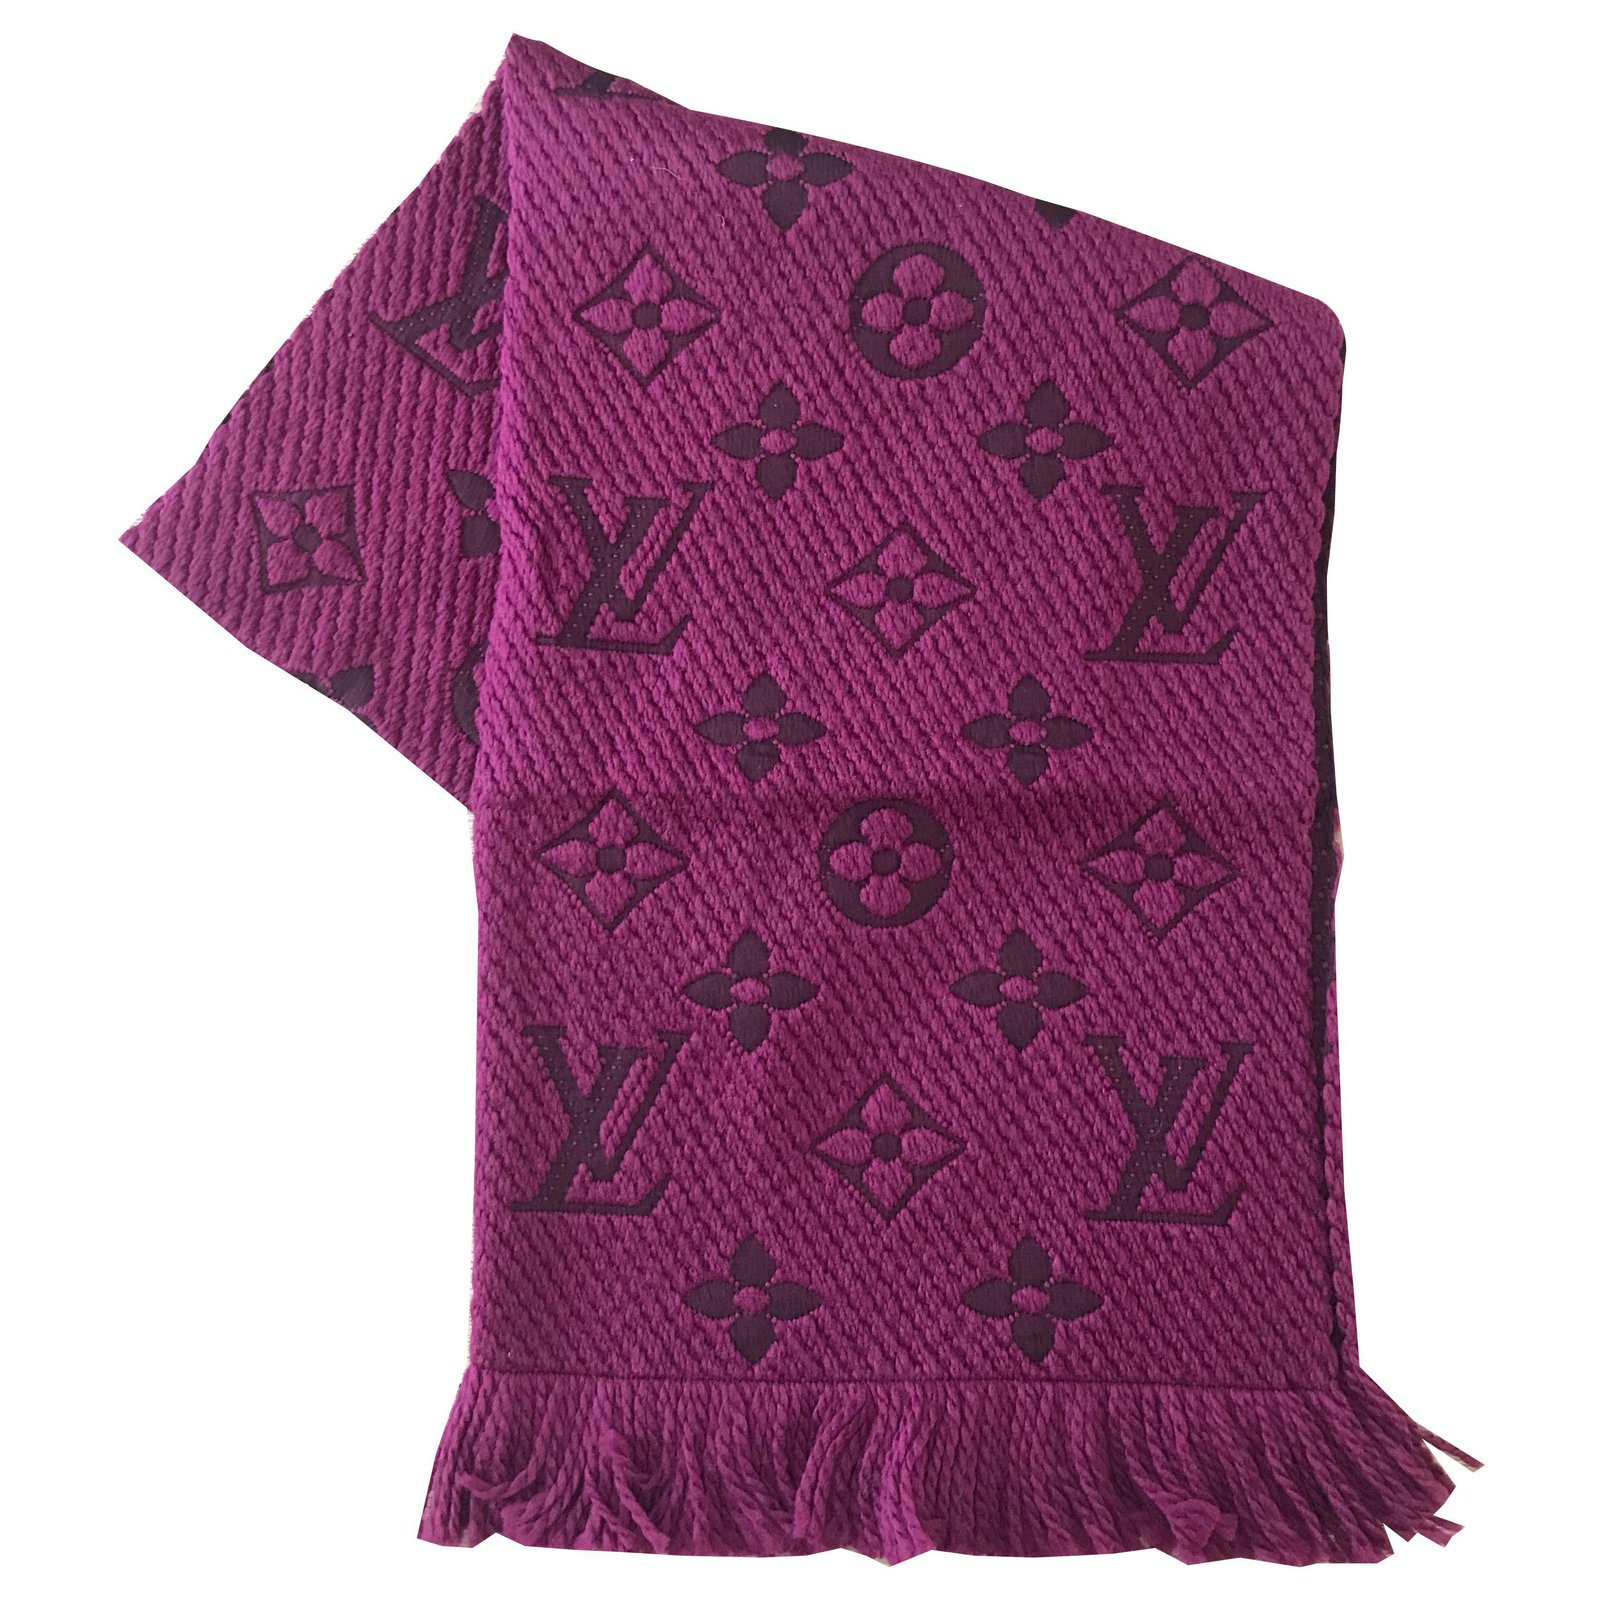 LV logomania scarf • Tise